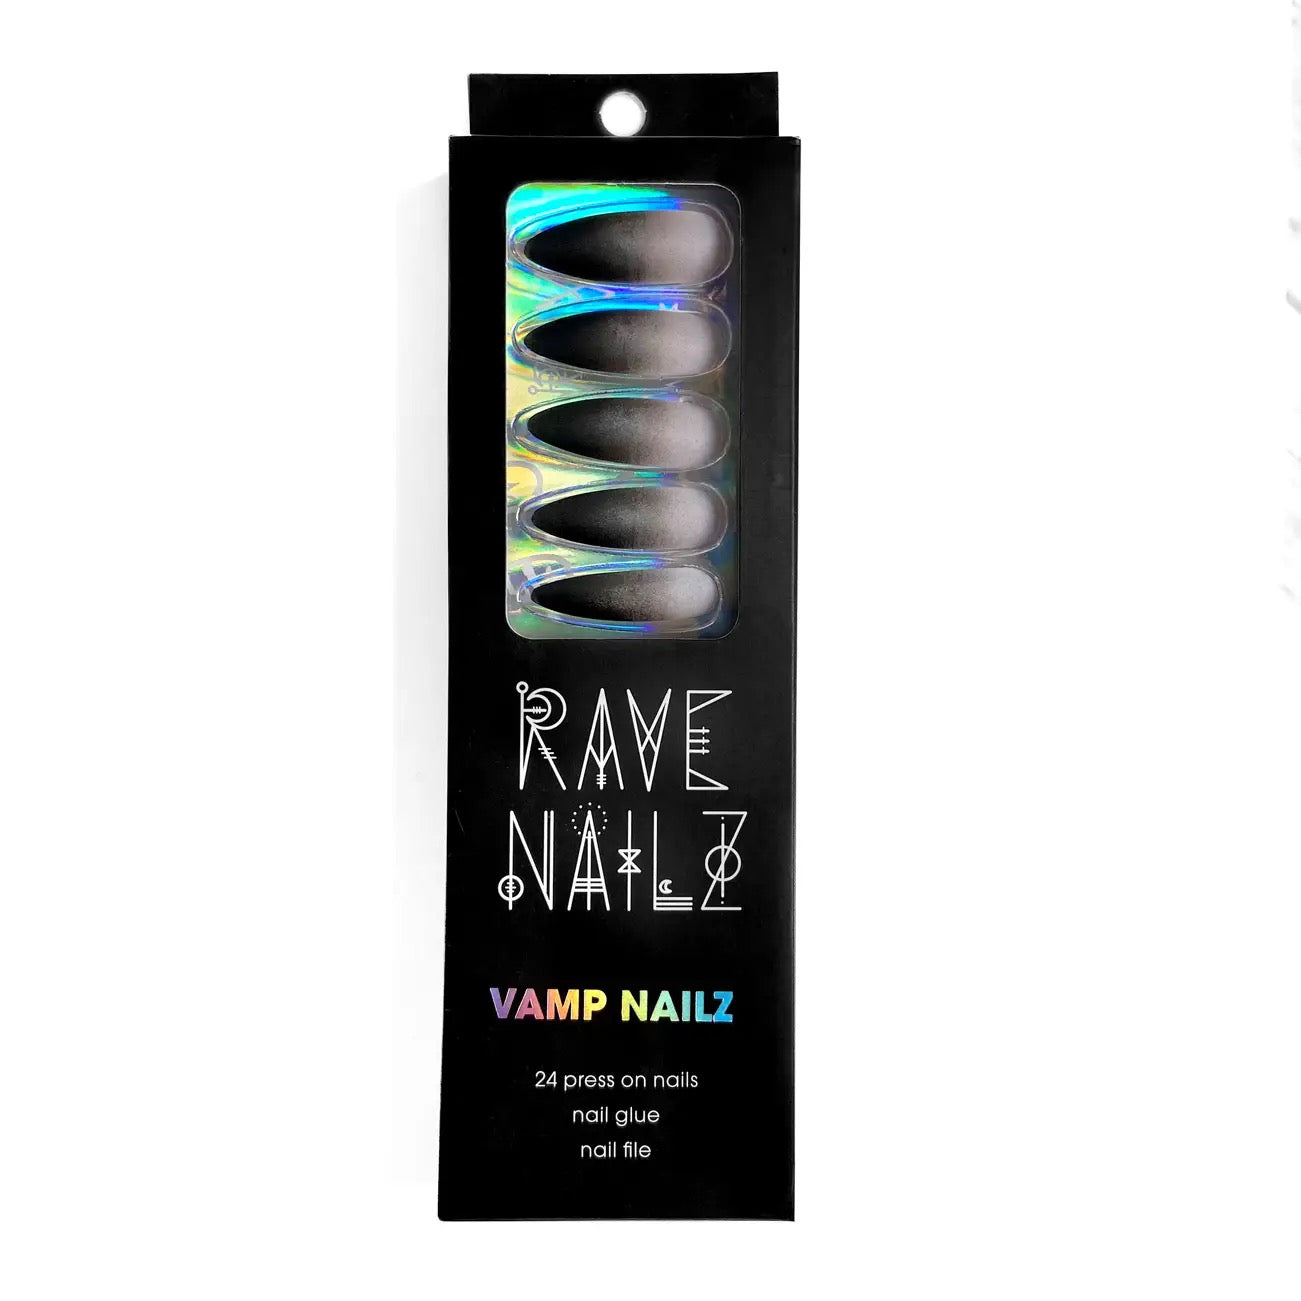 Vamp Nailz | Press On Nail Kit Includes 24 Nails